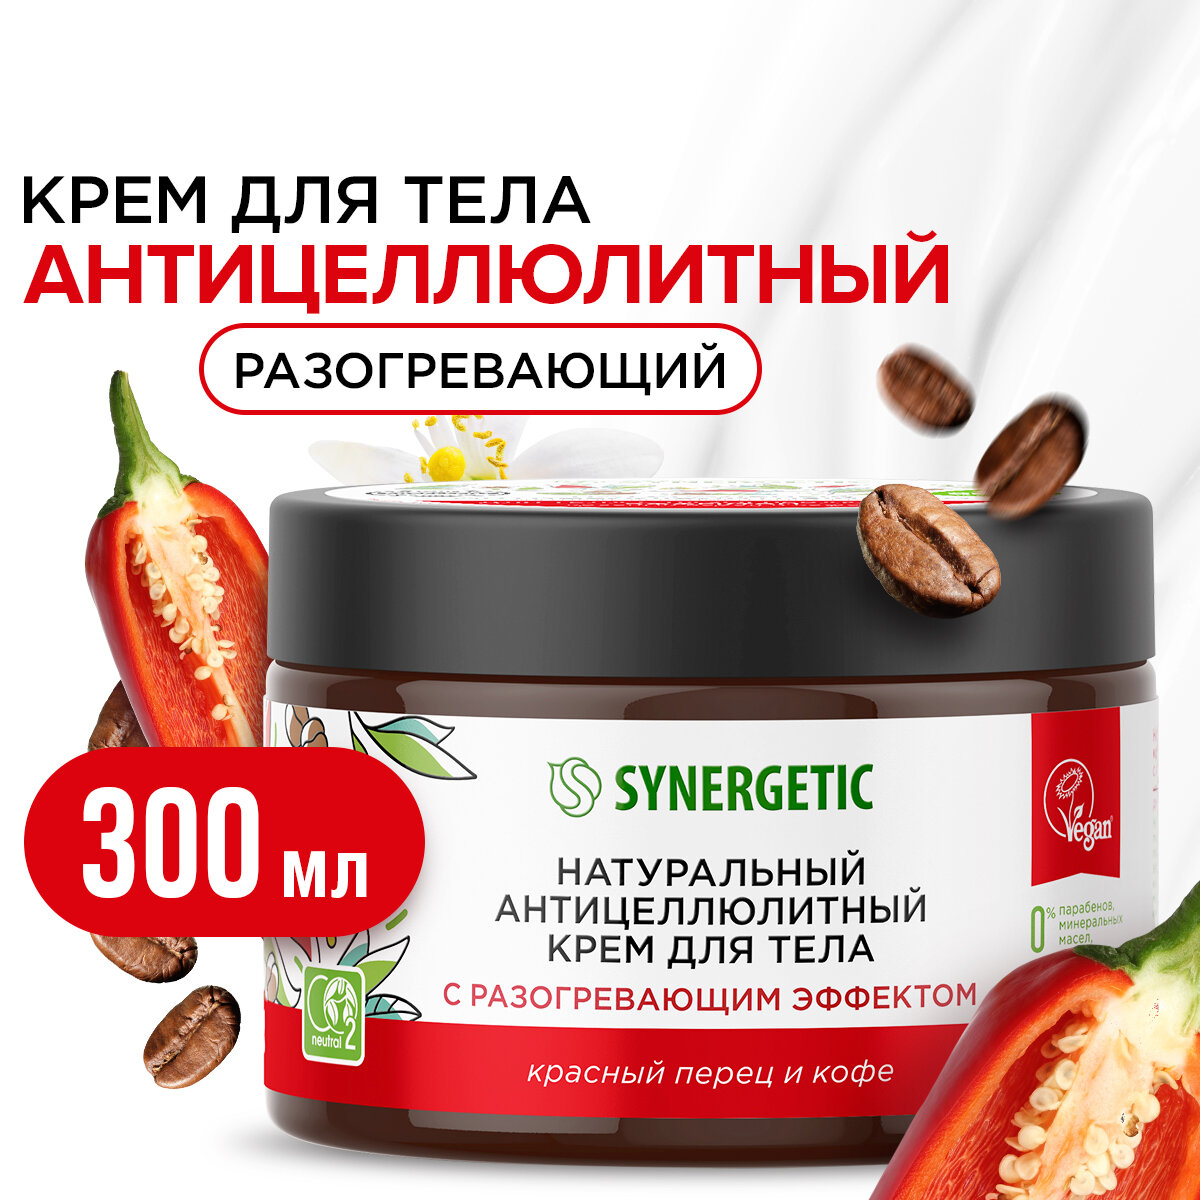 Натуральный антицеллюлитный крем для тела SYNERGETIC с разогревающим эффектом "Красный перец и кофе", 300 мл